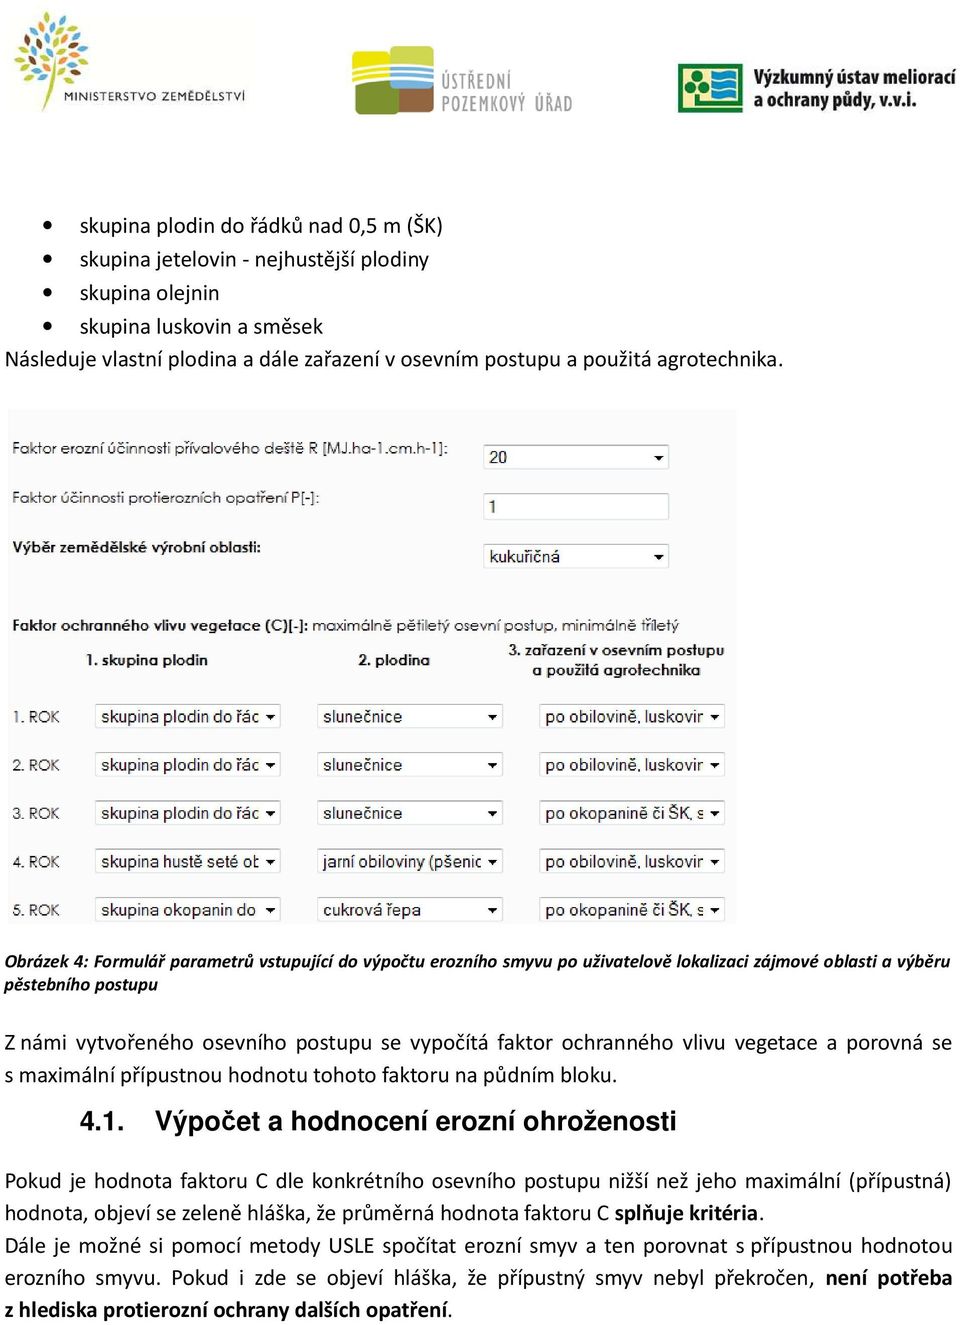 Obrázek 4: Formulář parametrů vstupující do výpočtu erozního smyvu po uživatelově lokalizaci zájmové oblasti a výběru pěstebního postupu Z námi vytvořeného osevního postupu se vypočítá faktor